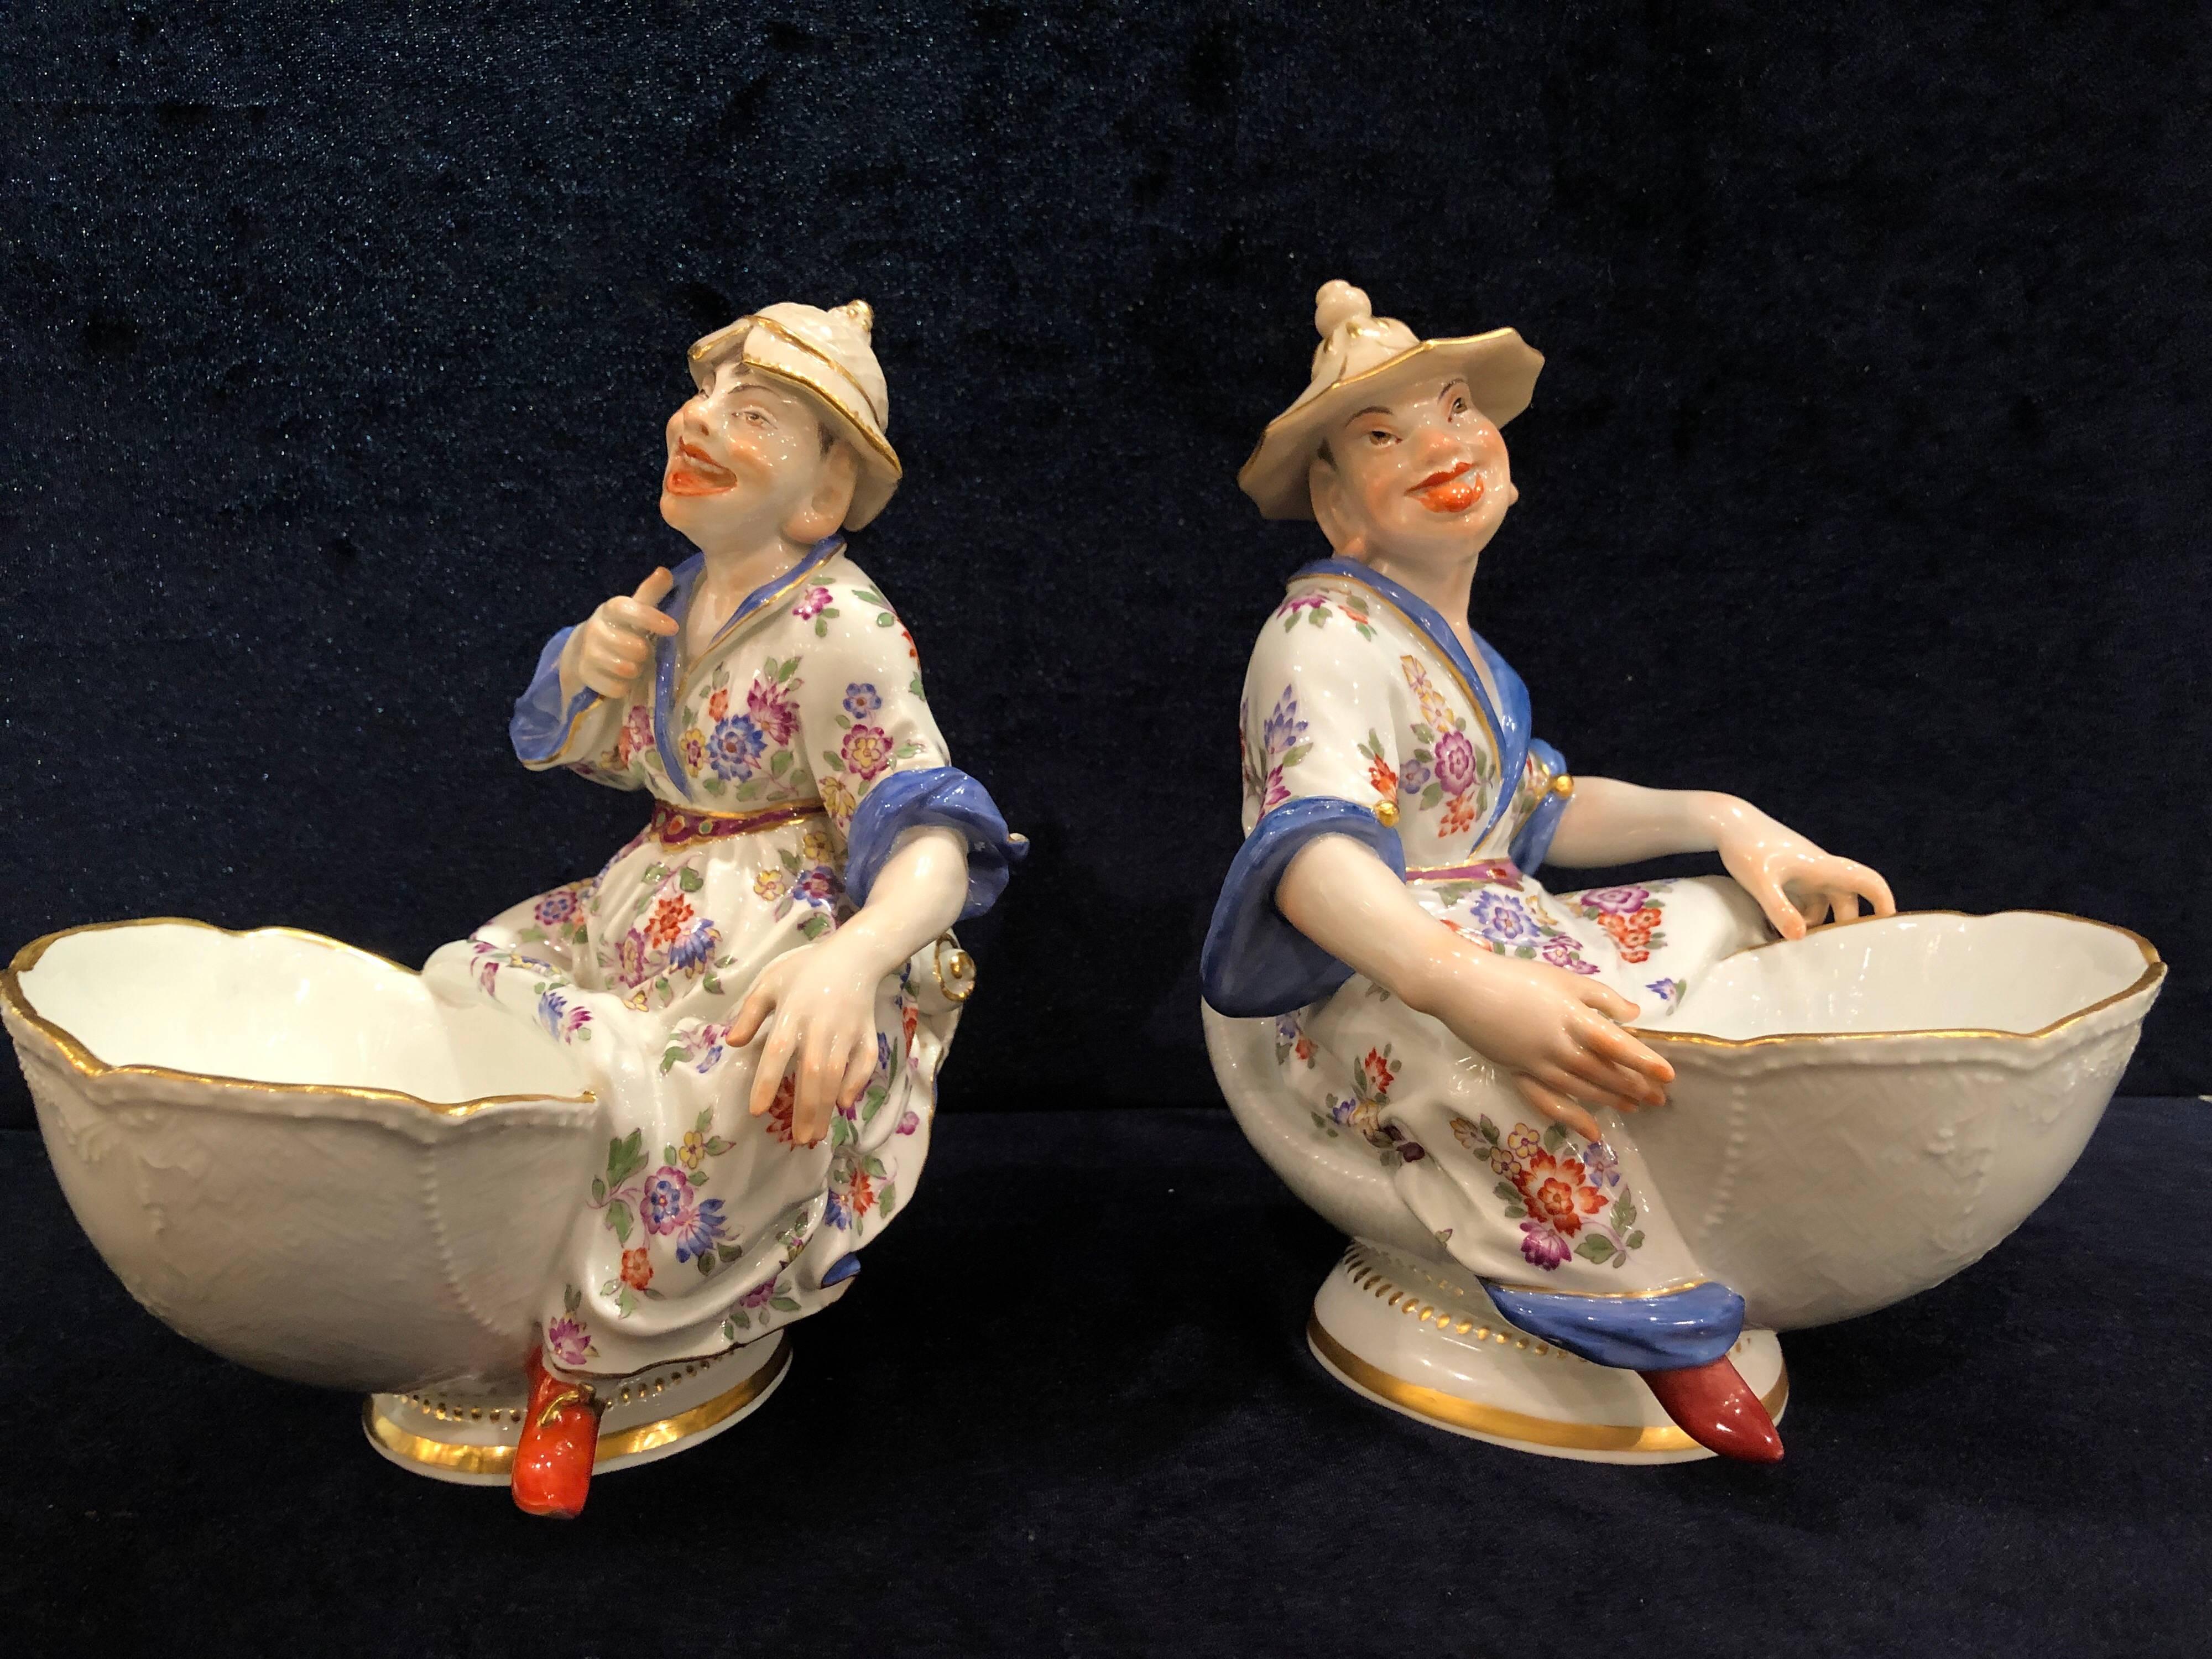 Rococo Paire de plats à sucre figuratifs en porcelaine de Meissen de style chinoiserie, J.J. Kandler - Kandler en vente